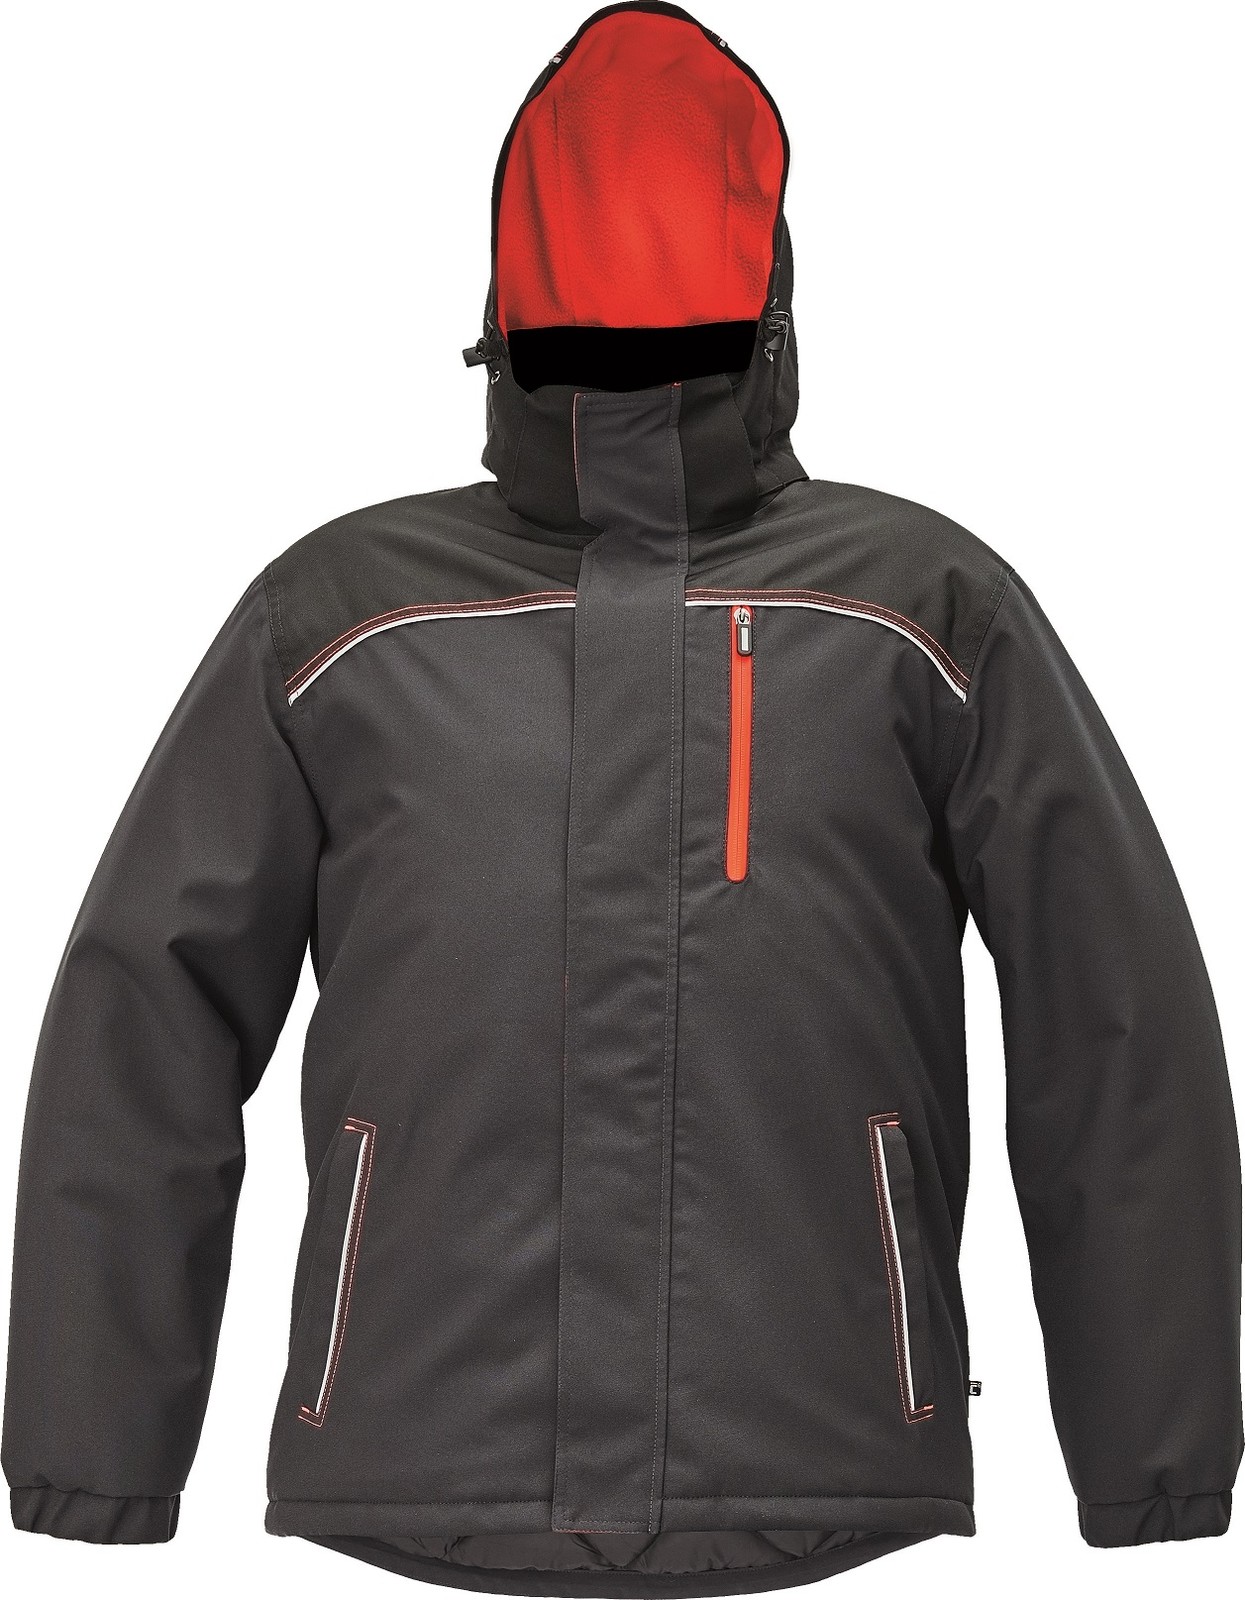 Zimná bunda Cerva Knoxfield pánska - veľkosť: 3XL, farba: antracit/červená